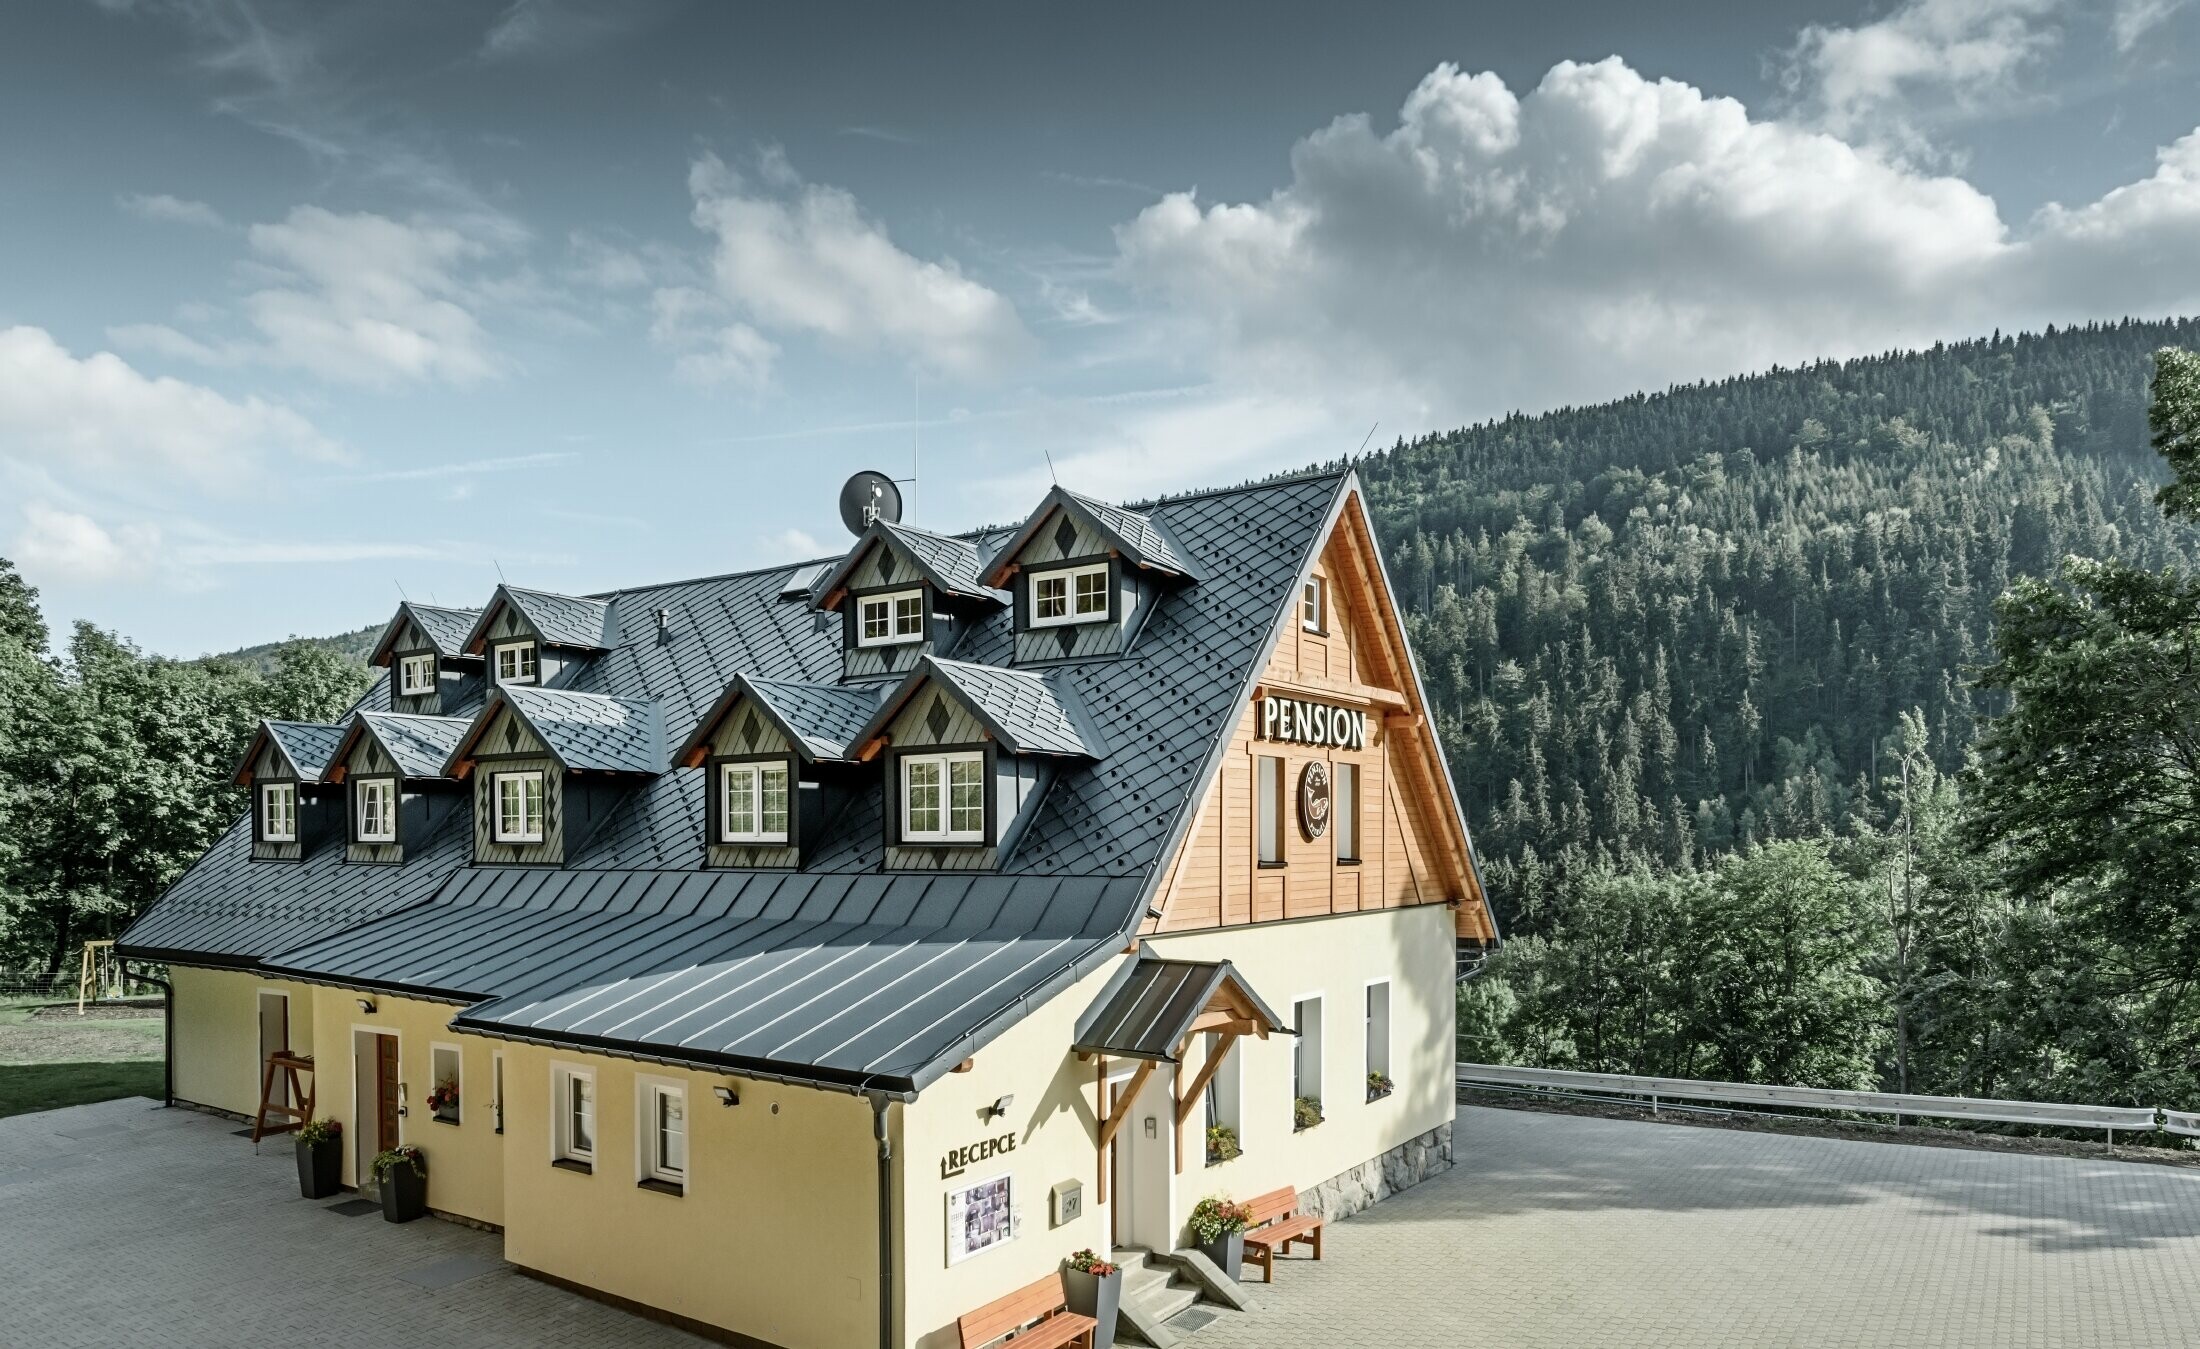 Maison de retraite en République tchèque, avec toit fortement incliné et nombreuses lucarnes, avec un toit en aluminium de PREFA, couverture en losanges avec protection contre le glissement de la neige